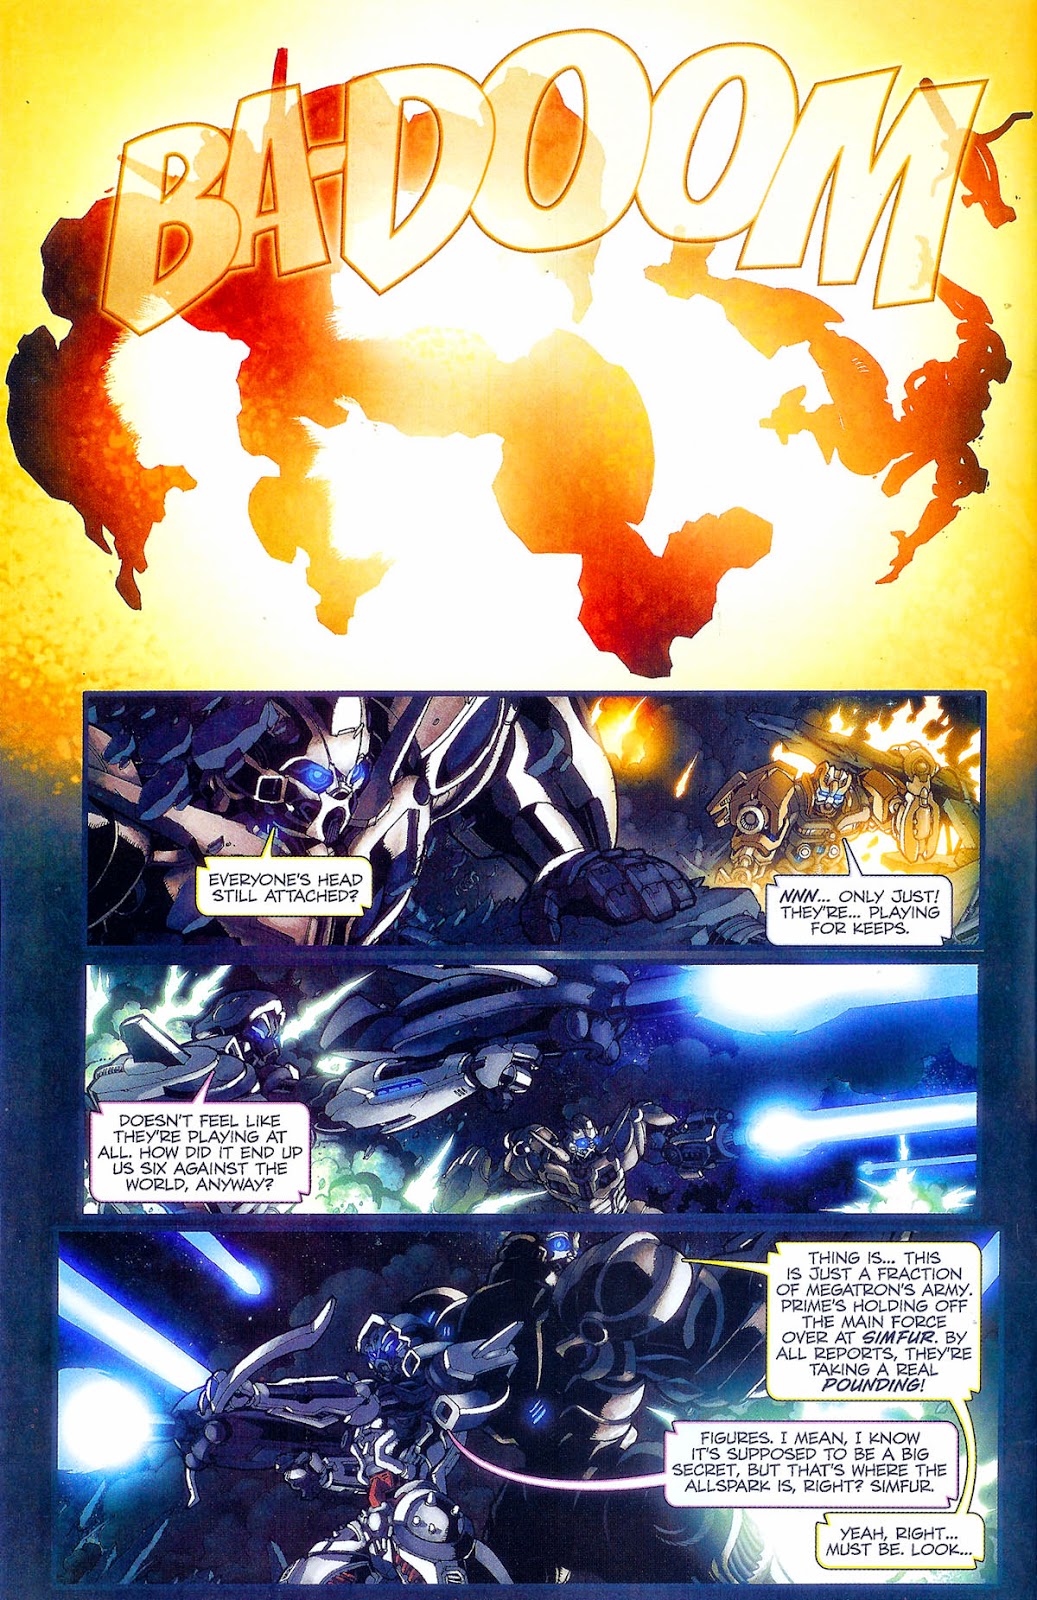 Tuneincomics Transformers Prequel Volume 1 Issue 1